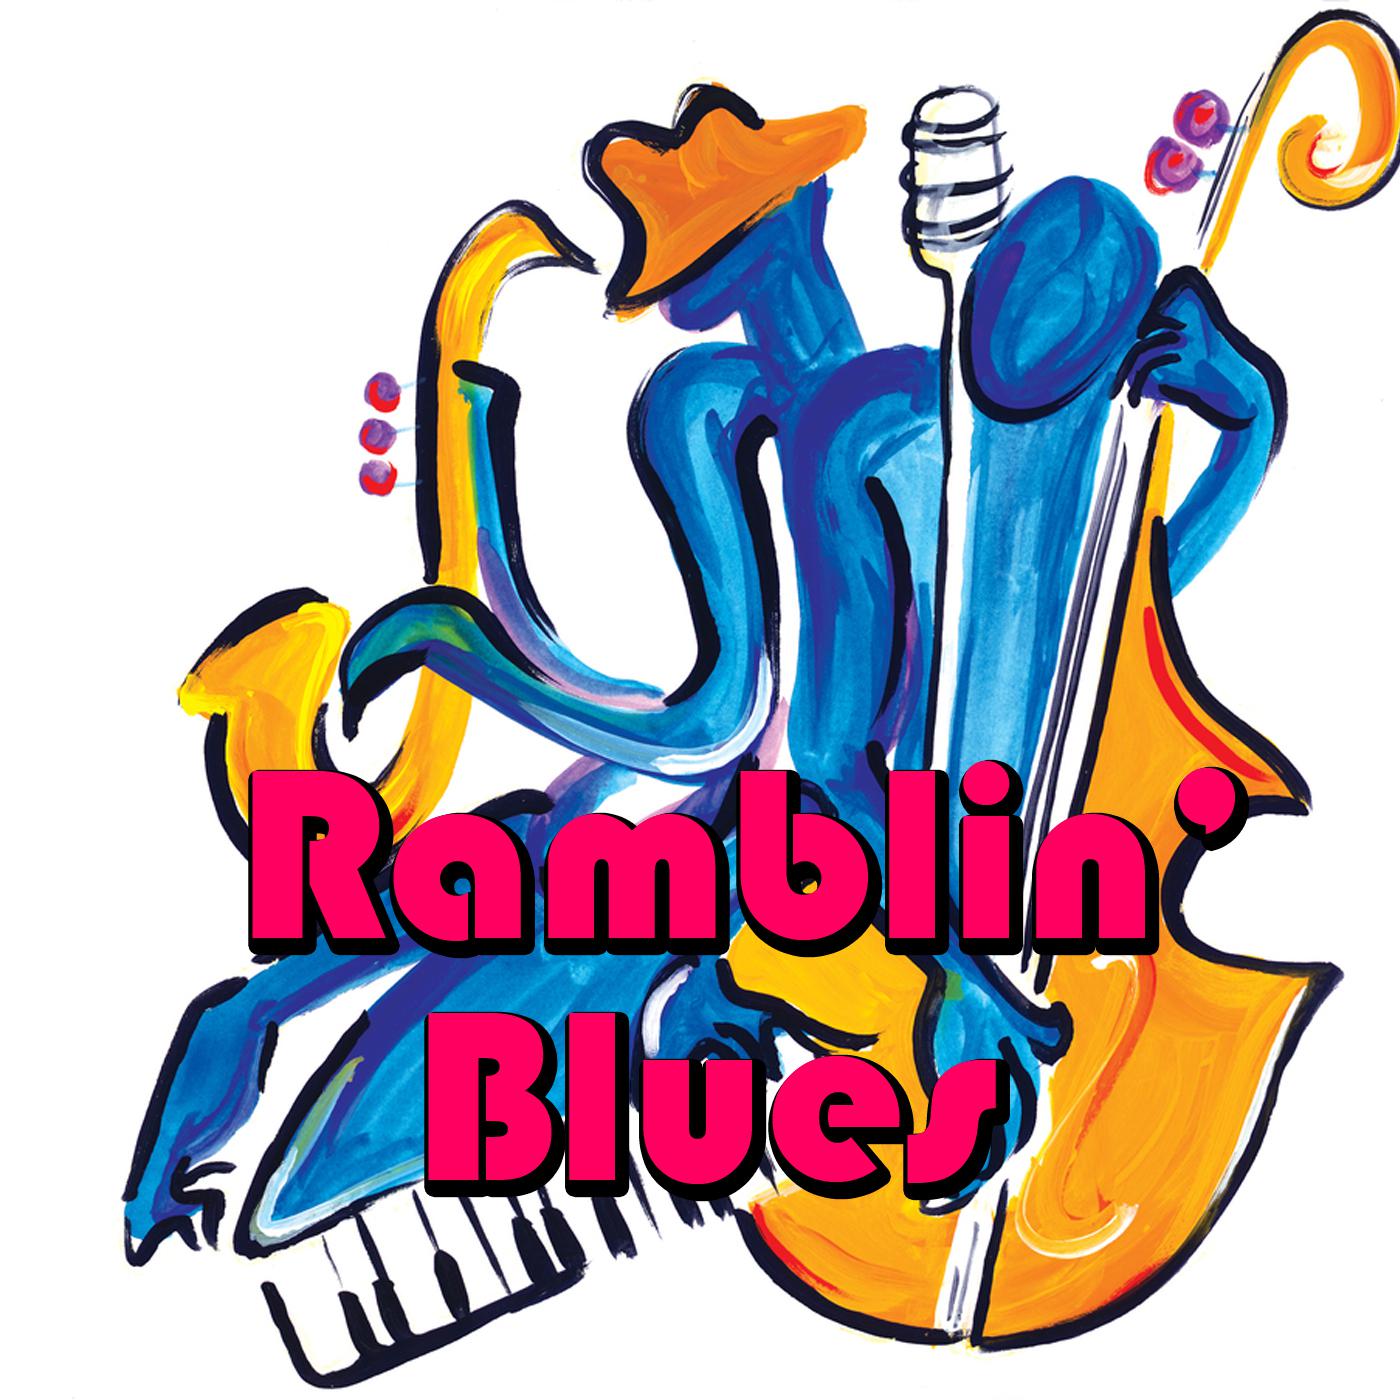 Ramblin' Blues